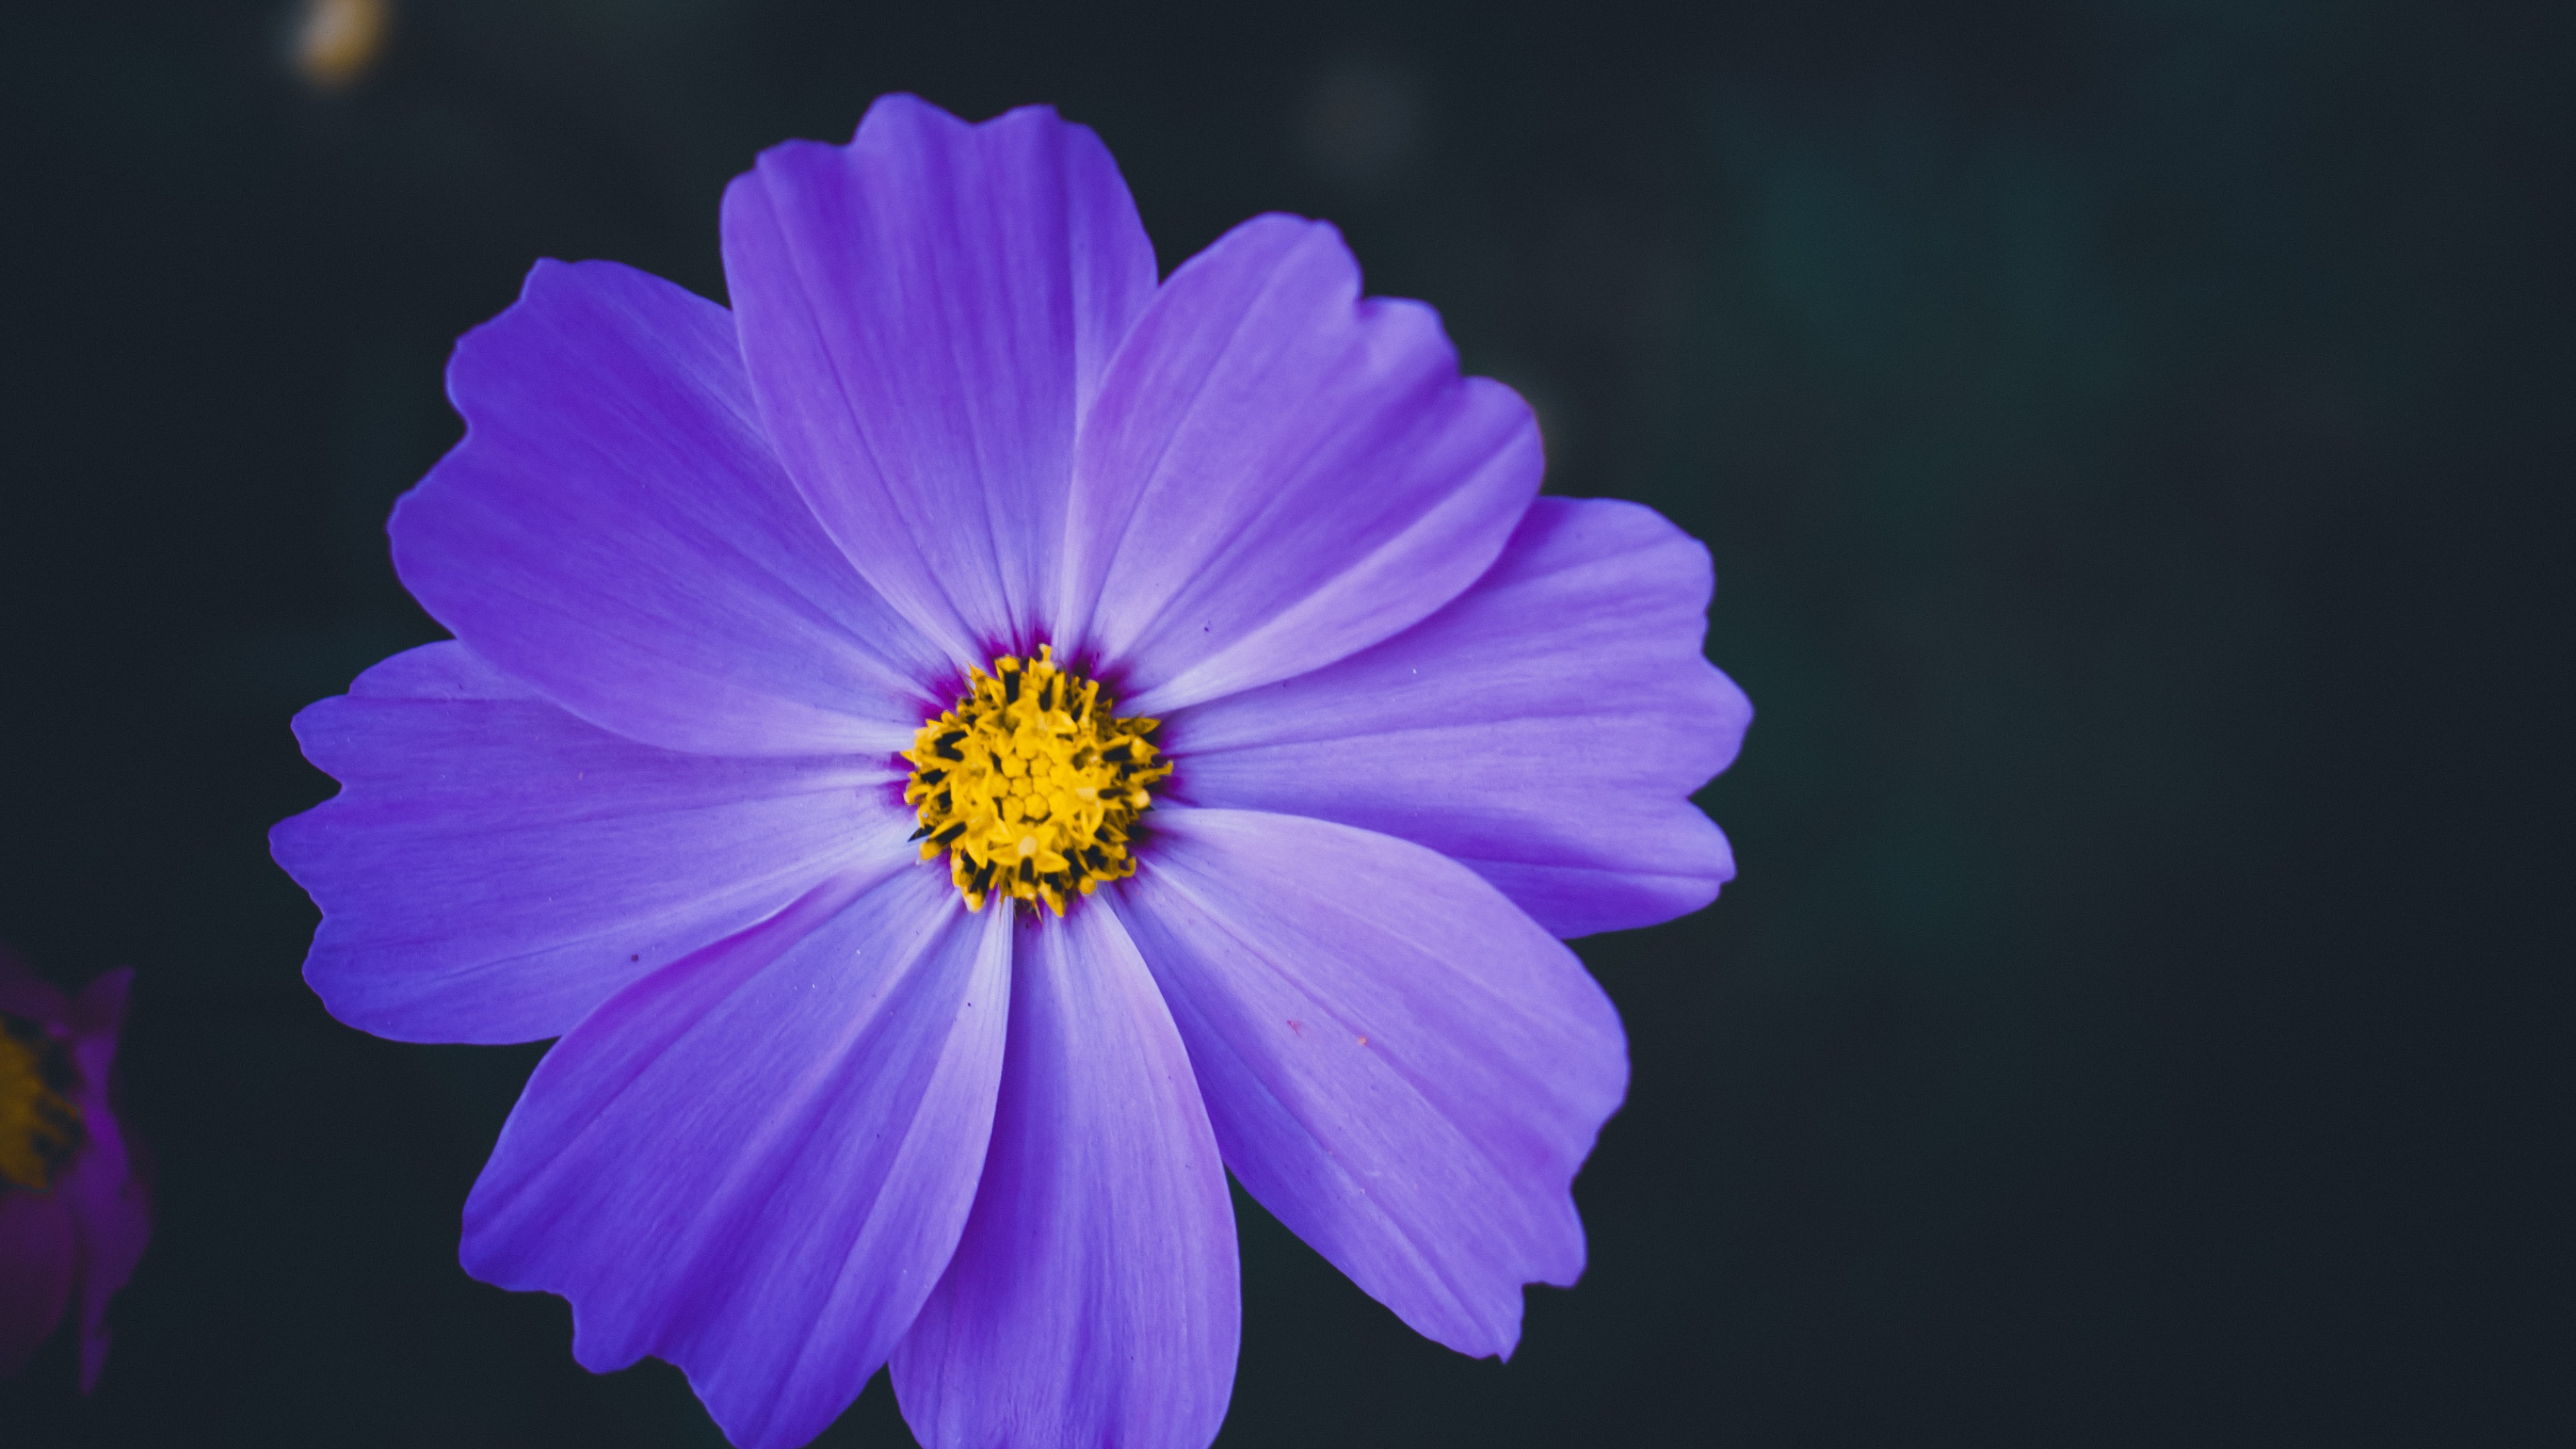 Purple Flower in Tilt Shift Lens. Wallpaper in 3840x2160 Resolution